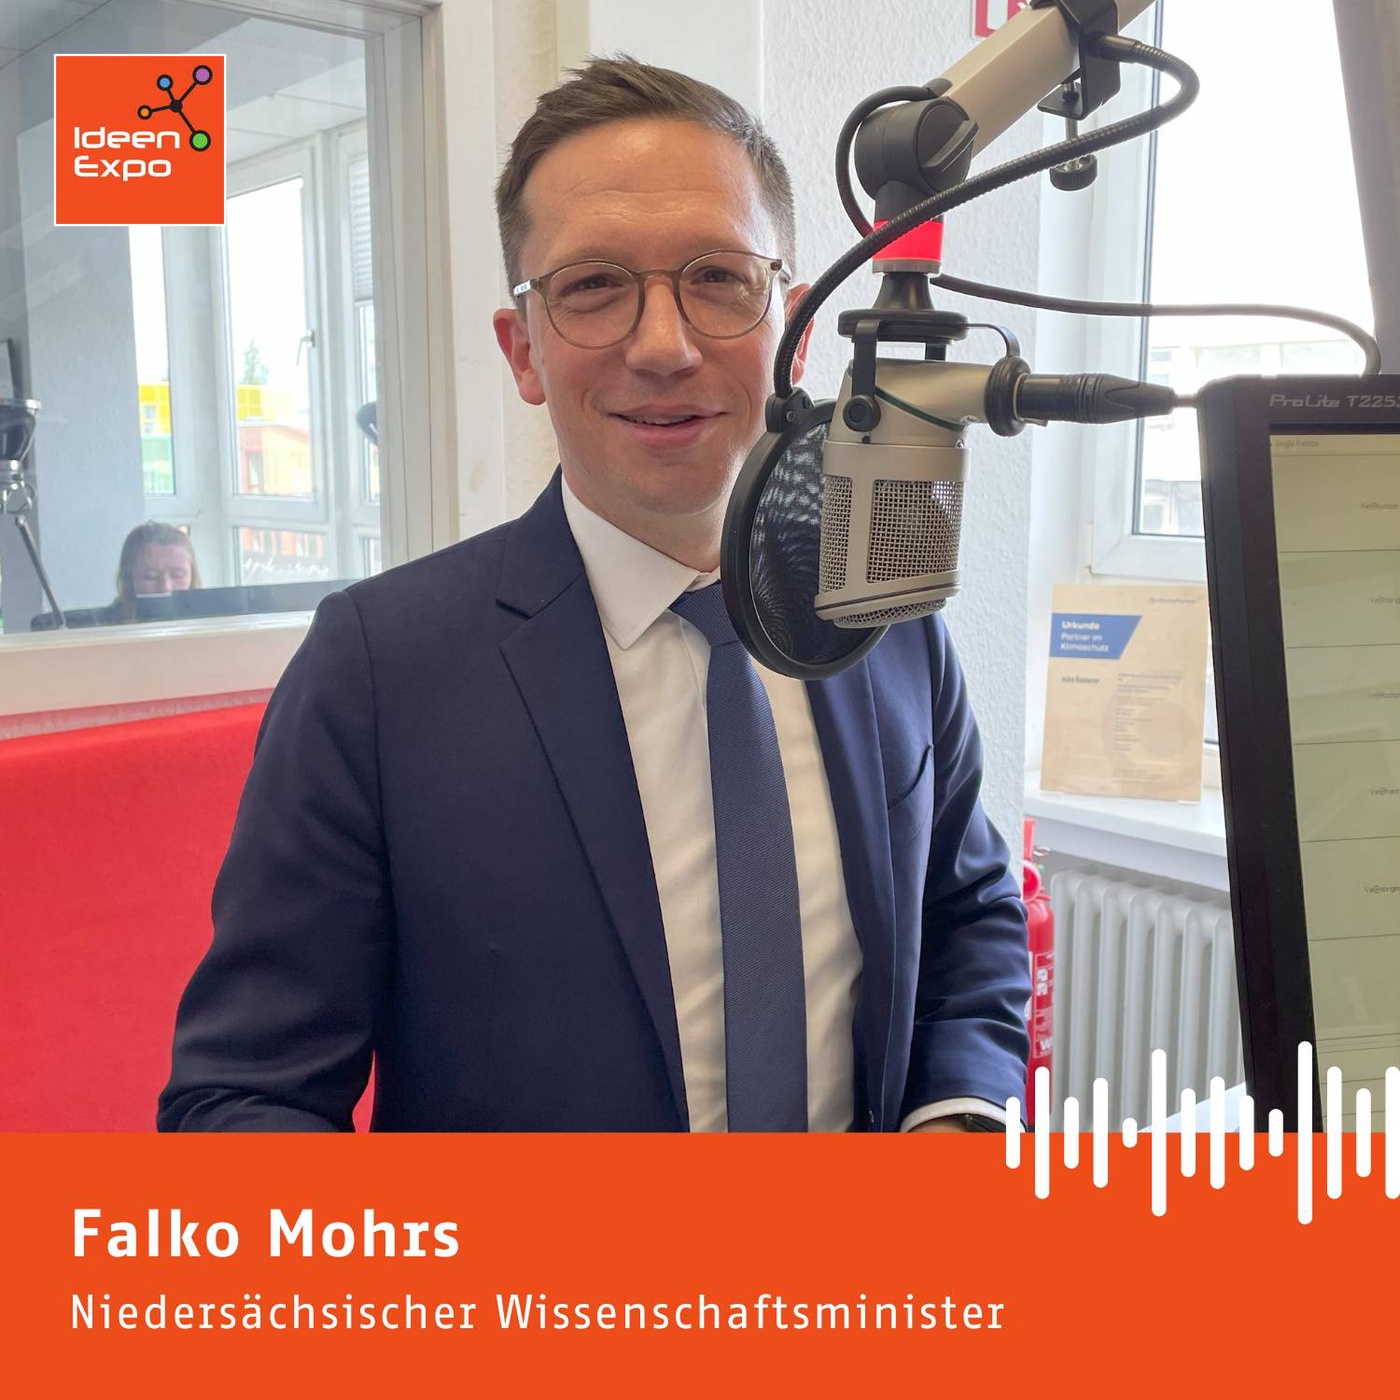 Falko Mohrs: Alle ziehen am zu kurzen Fachkräfte-Tischtuch